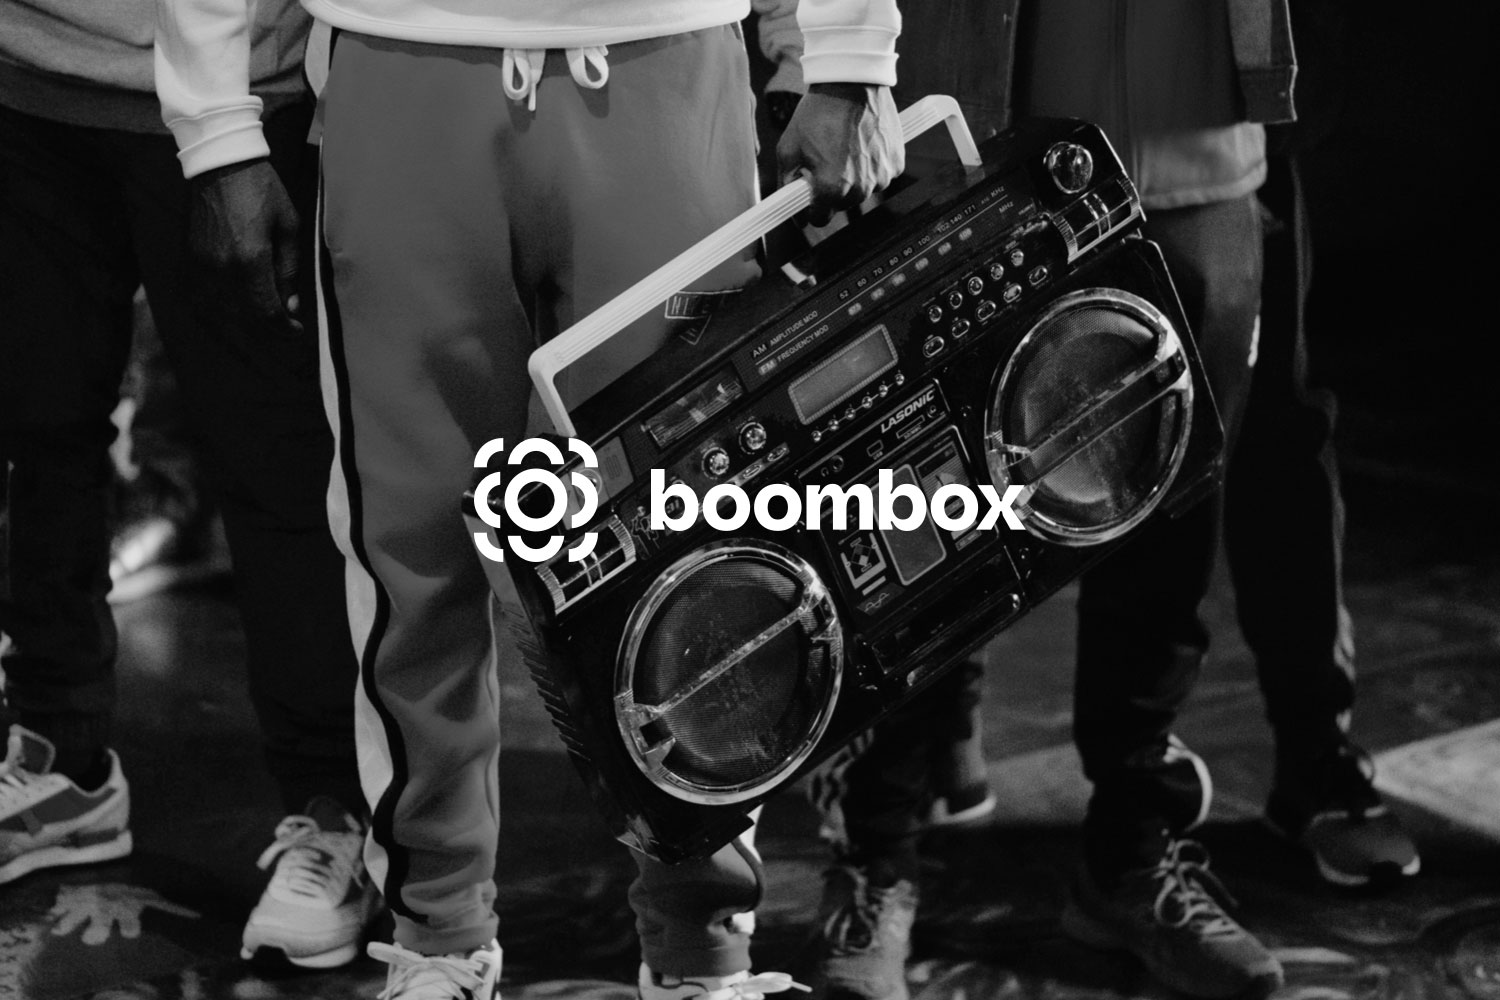 Boombox brand design